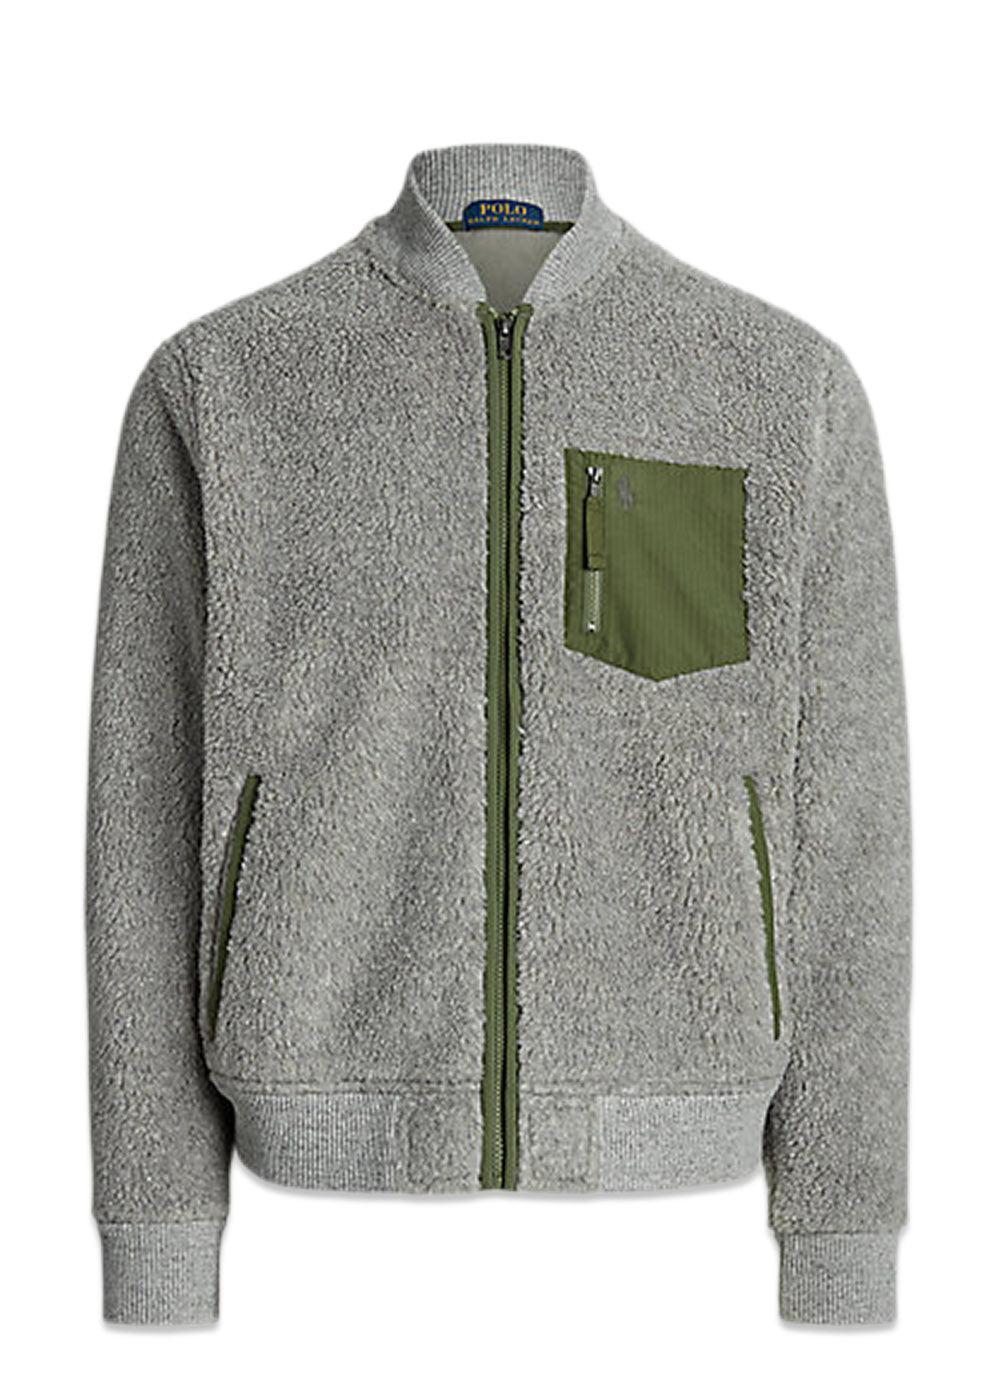 Ralph Laurens Fleece Zip - Grey/Green. Køb fleece her.